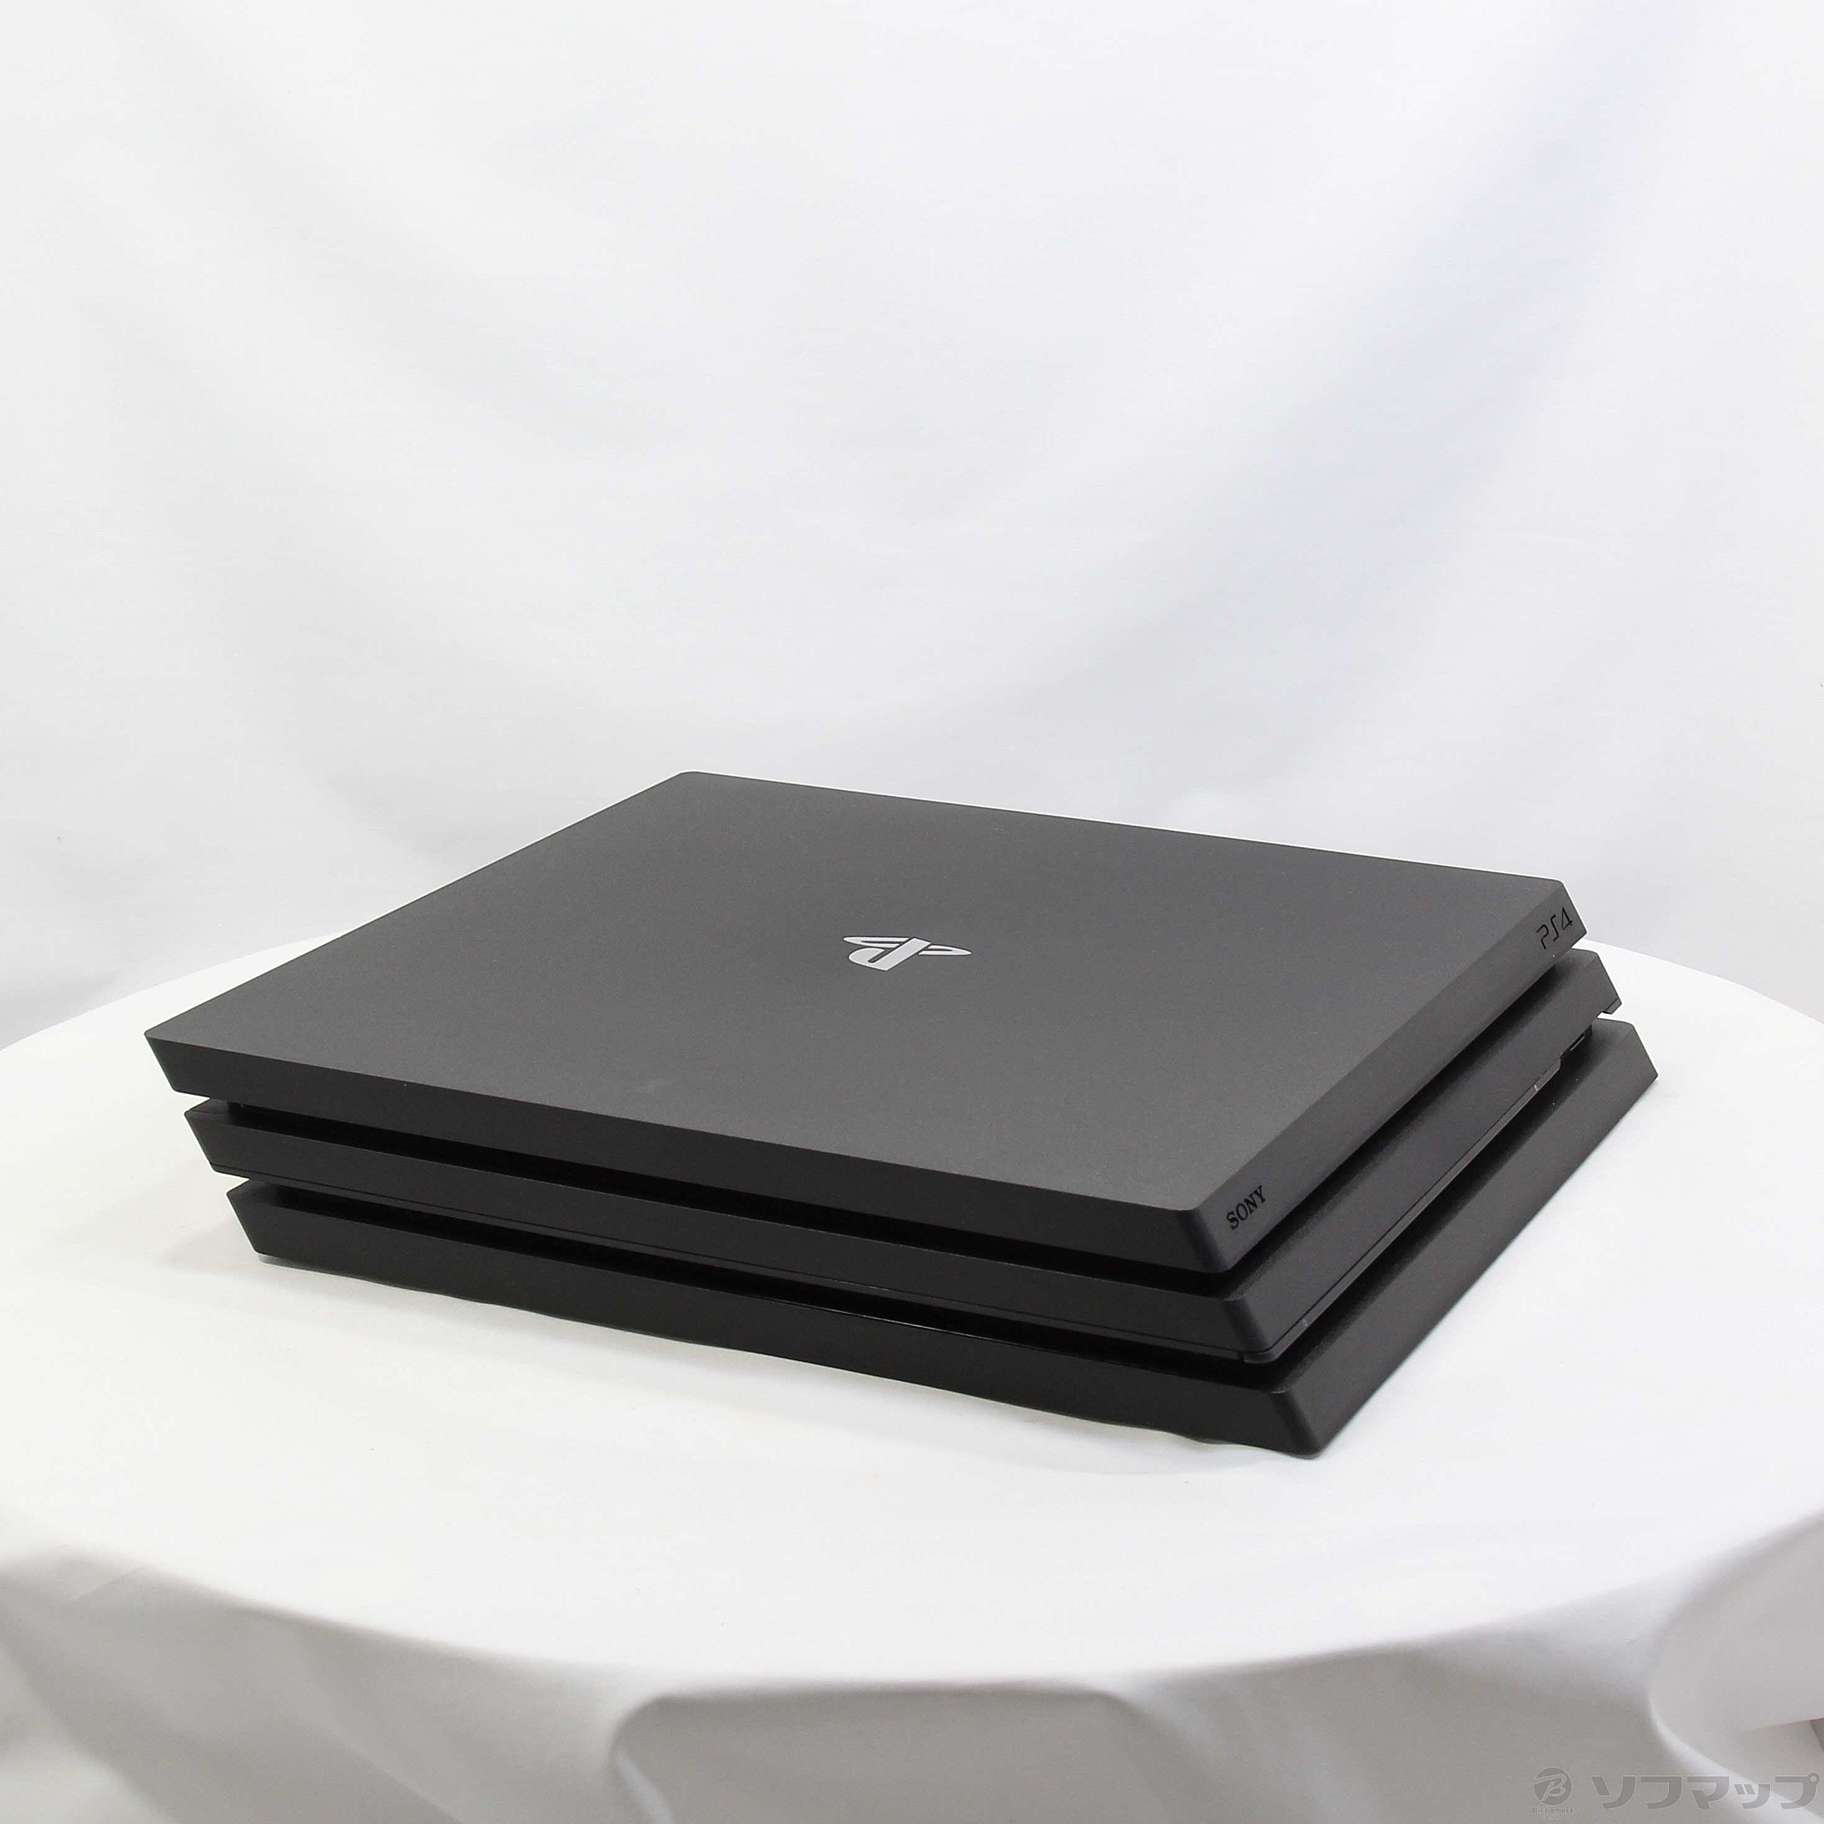 中古】PlayStation 4 Pro ジェット・ブラック 2TB CUH-7200CB01